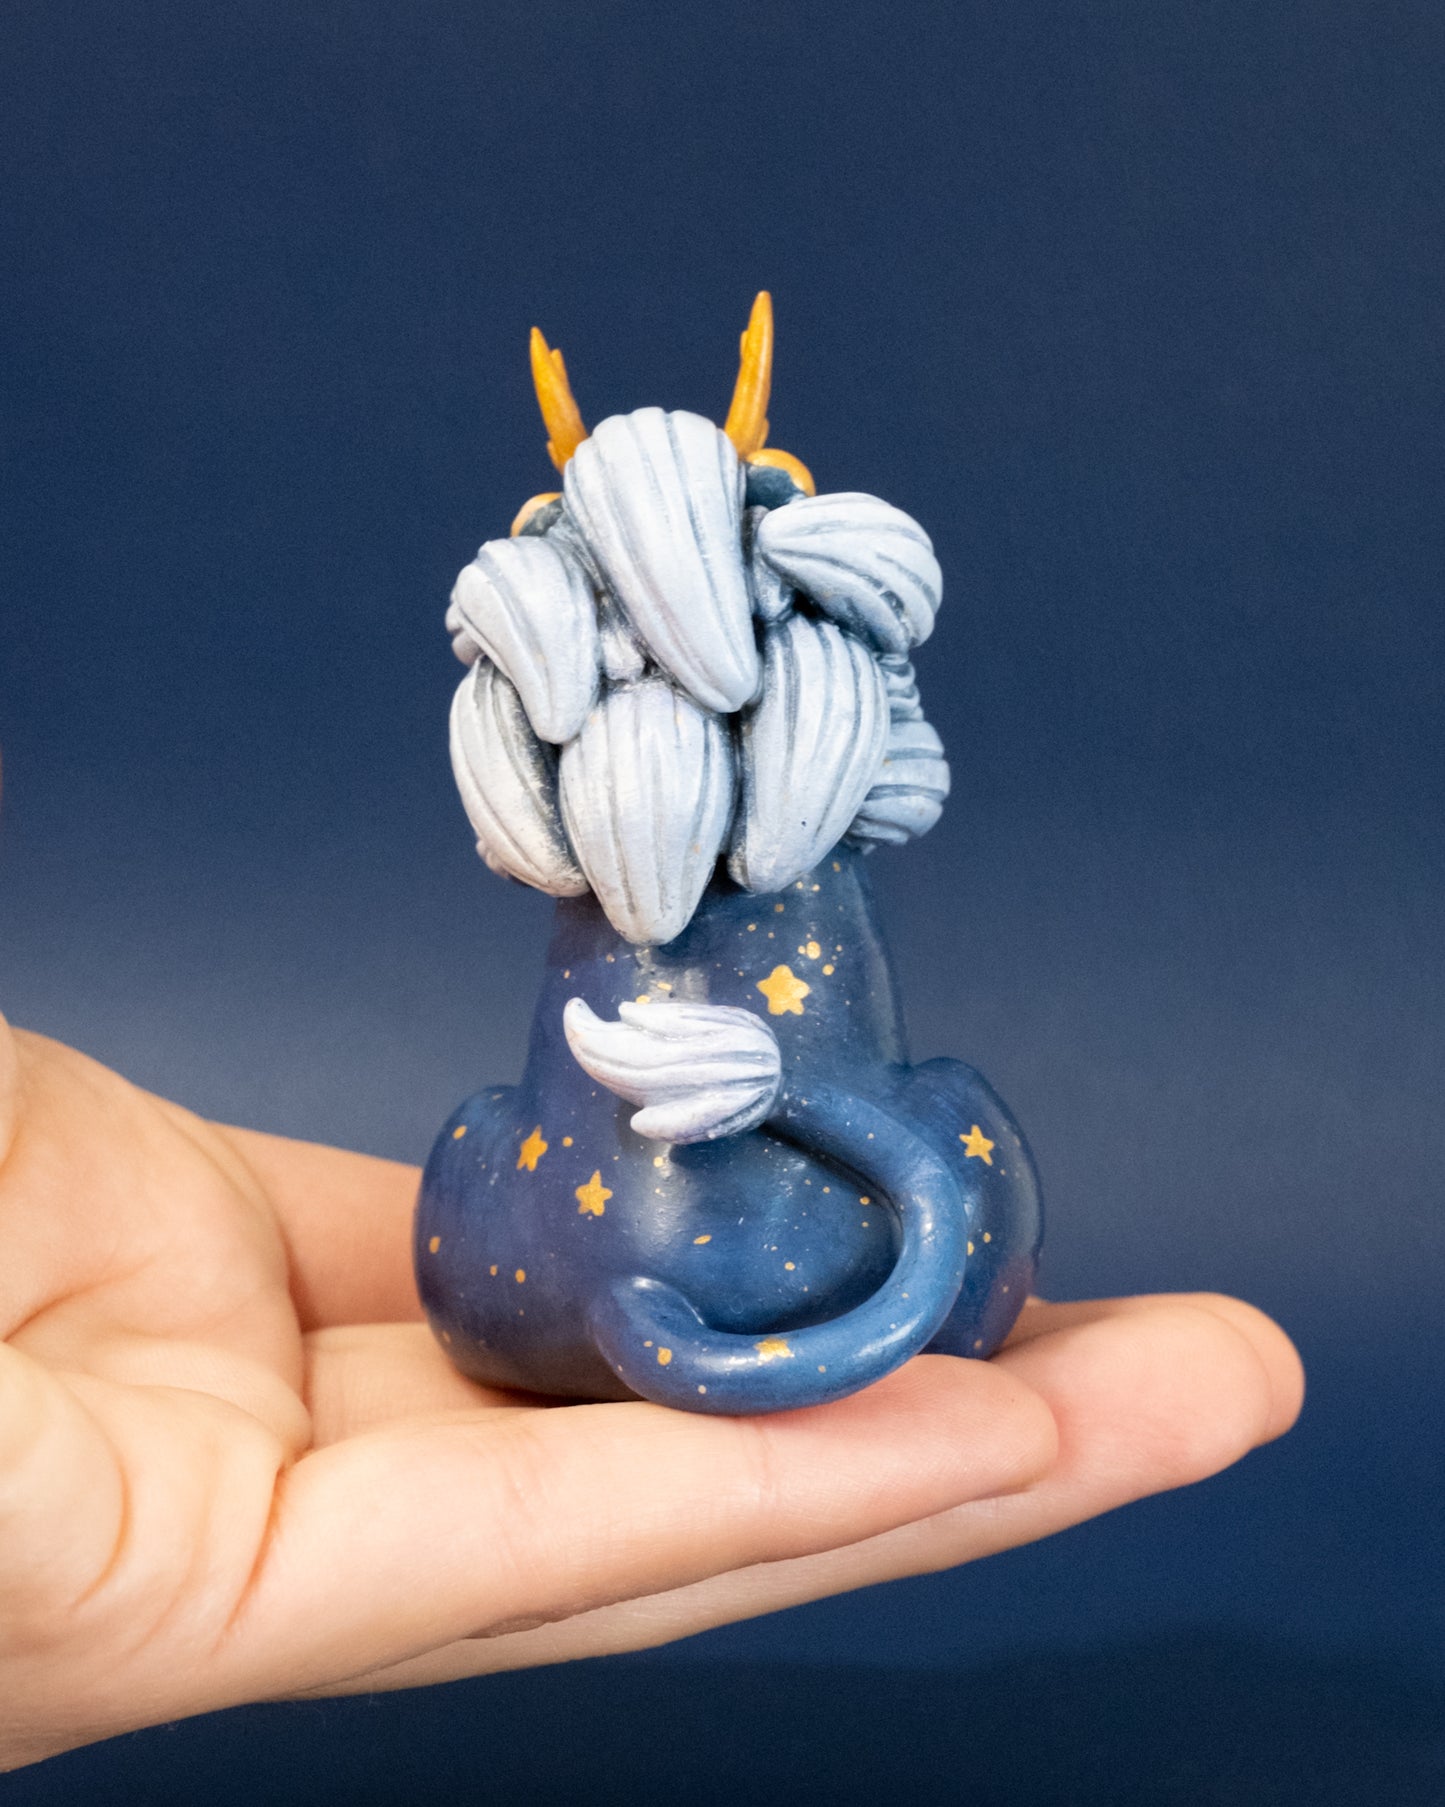 Galaxy Lion Figurine in Polymer Clay